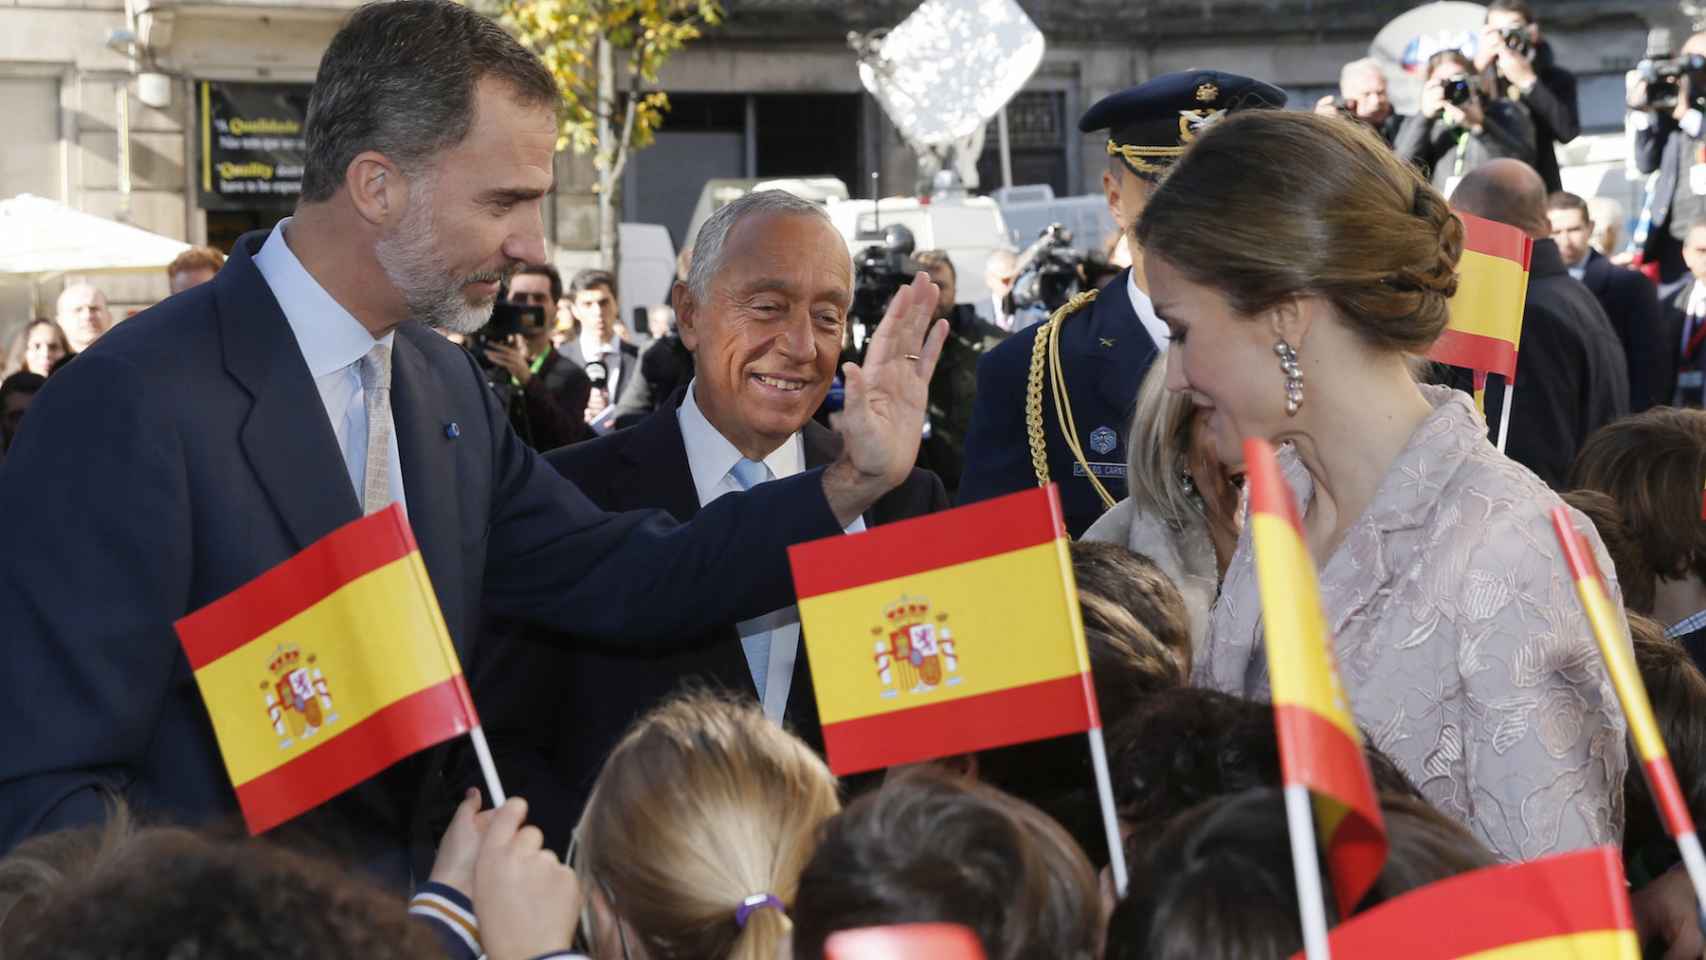 Los reyes, este lunes en Guimaraes junto al presidente de la república portuguesa.